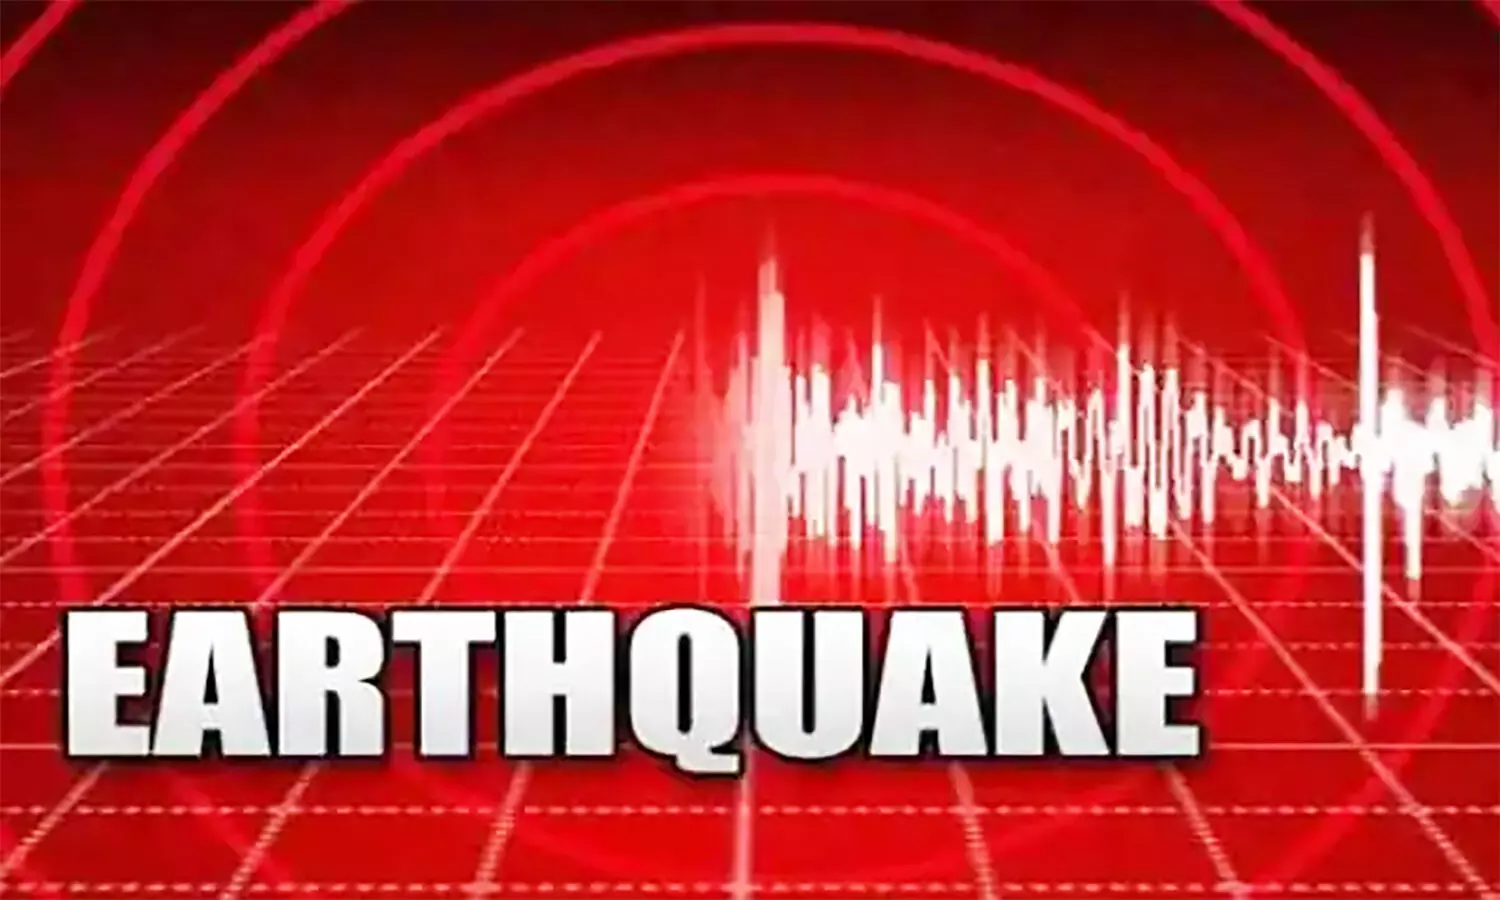 Earthquake in MP: पहले छत्तीसगढ़ फिर मध्यप्रदेश में आया भूकंप, 3 मिनट के भीतर ही दोनों राज्यों की धरती हिली